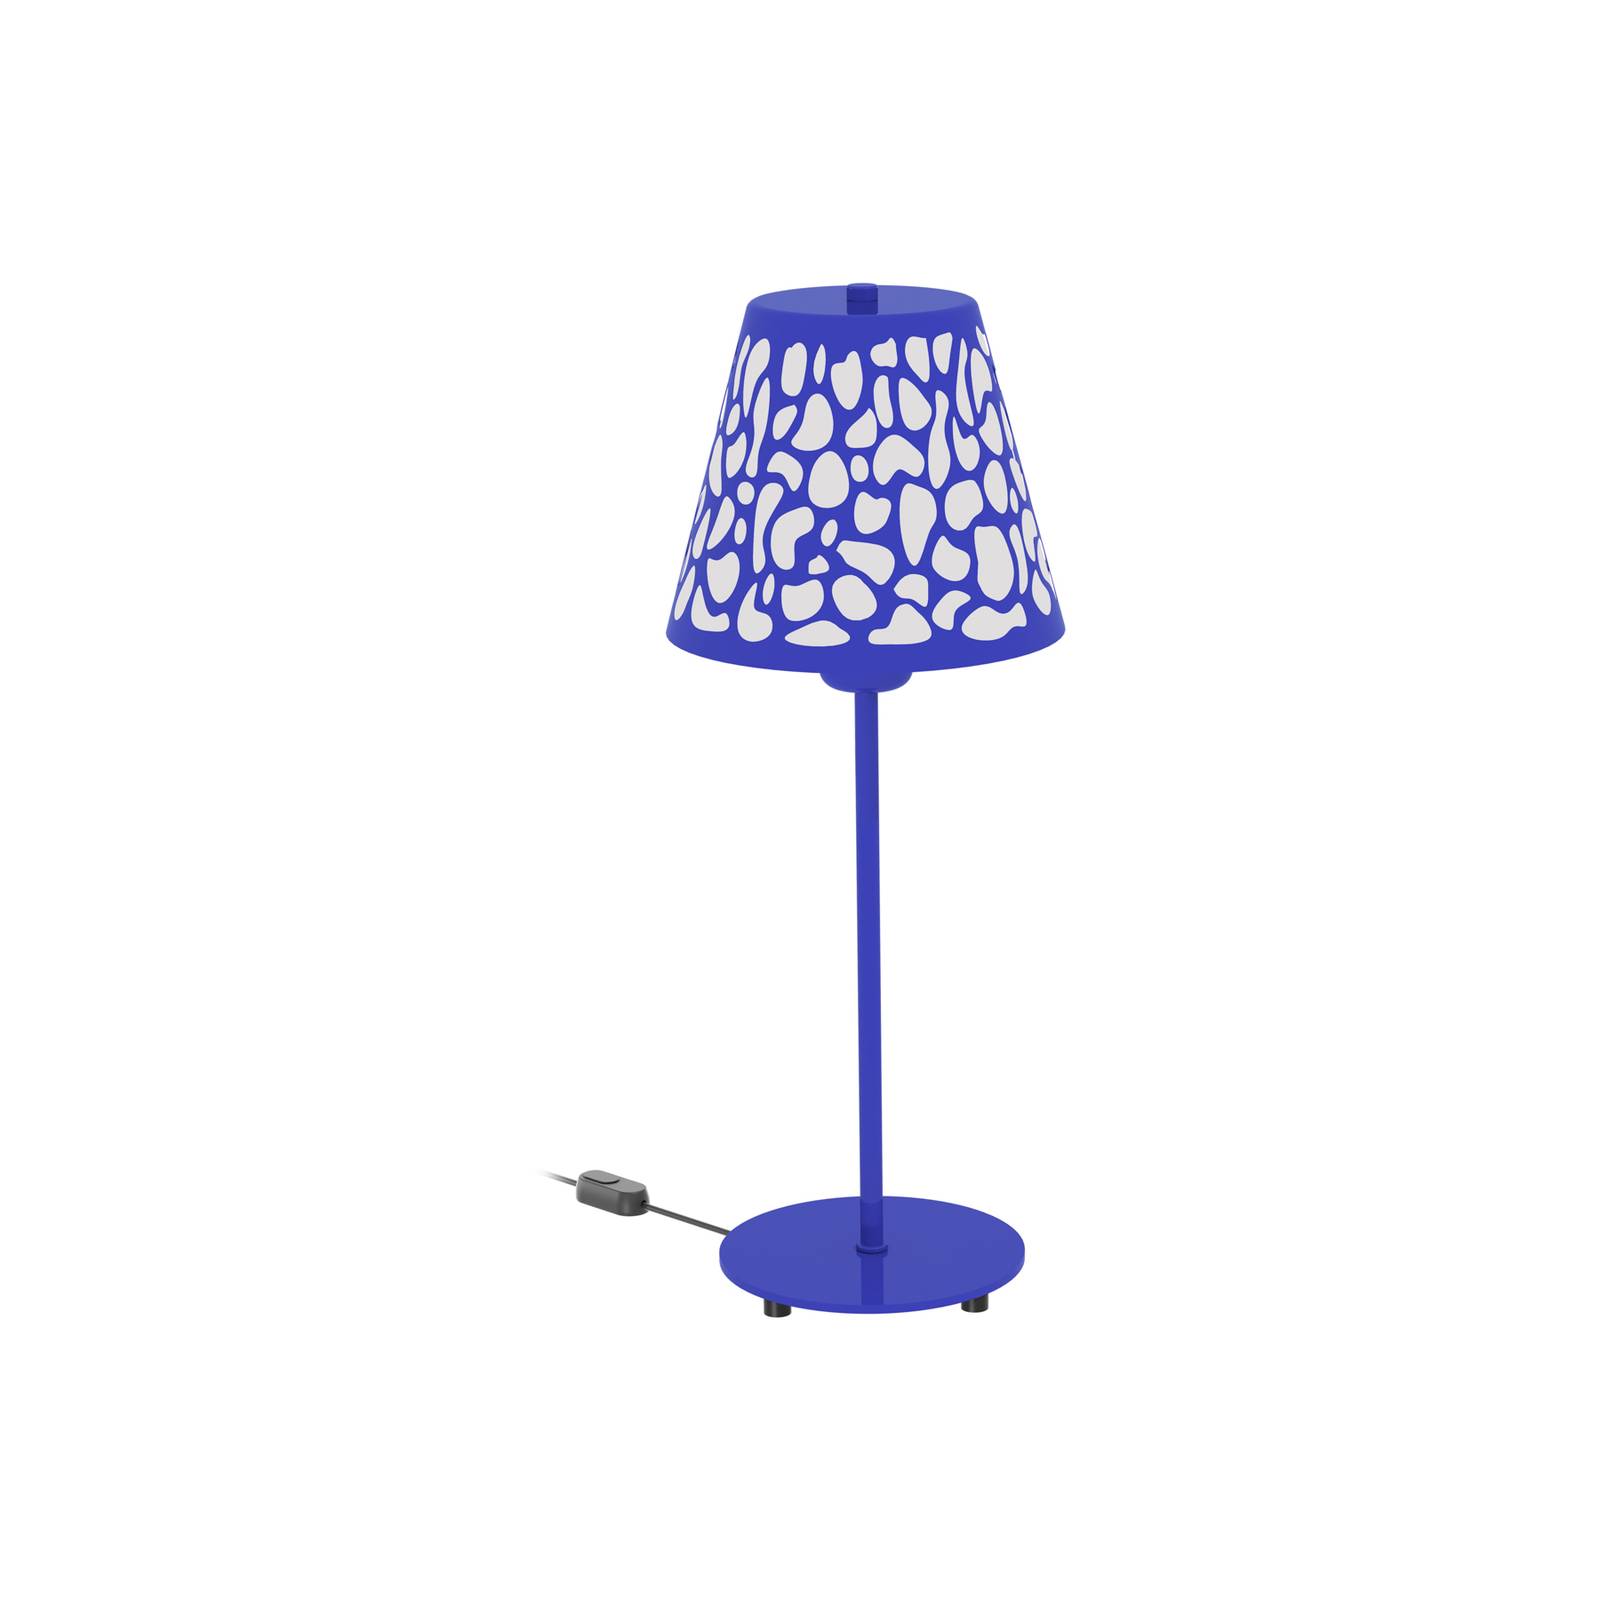 Aluminor Nihoa Tischlampe mit Lochmuster blau/weiß von Aluminor